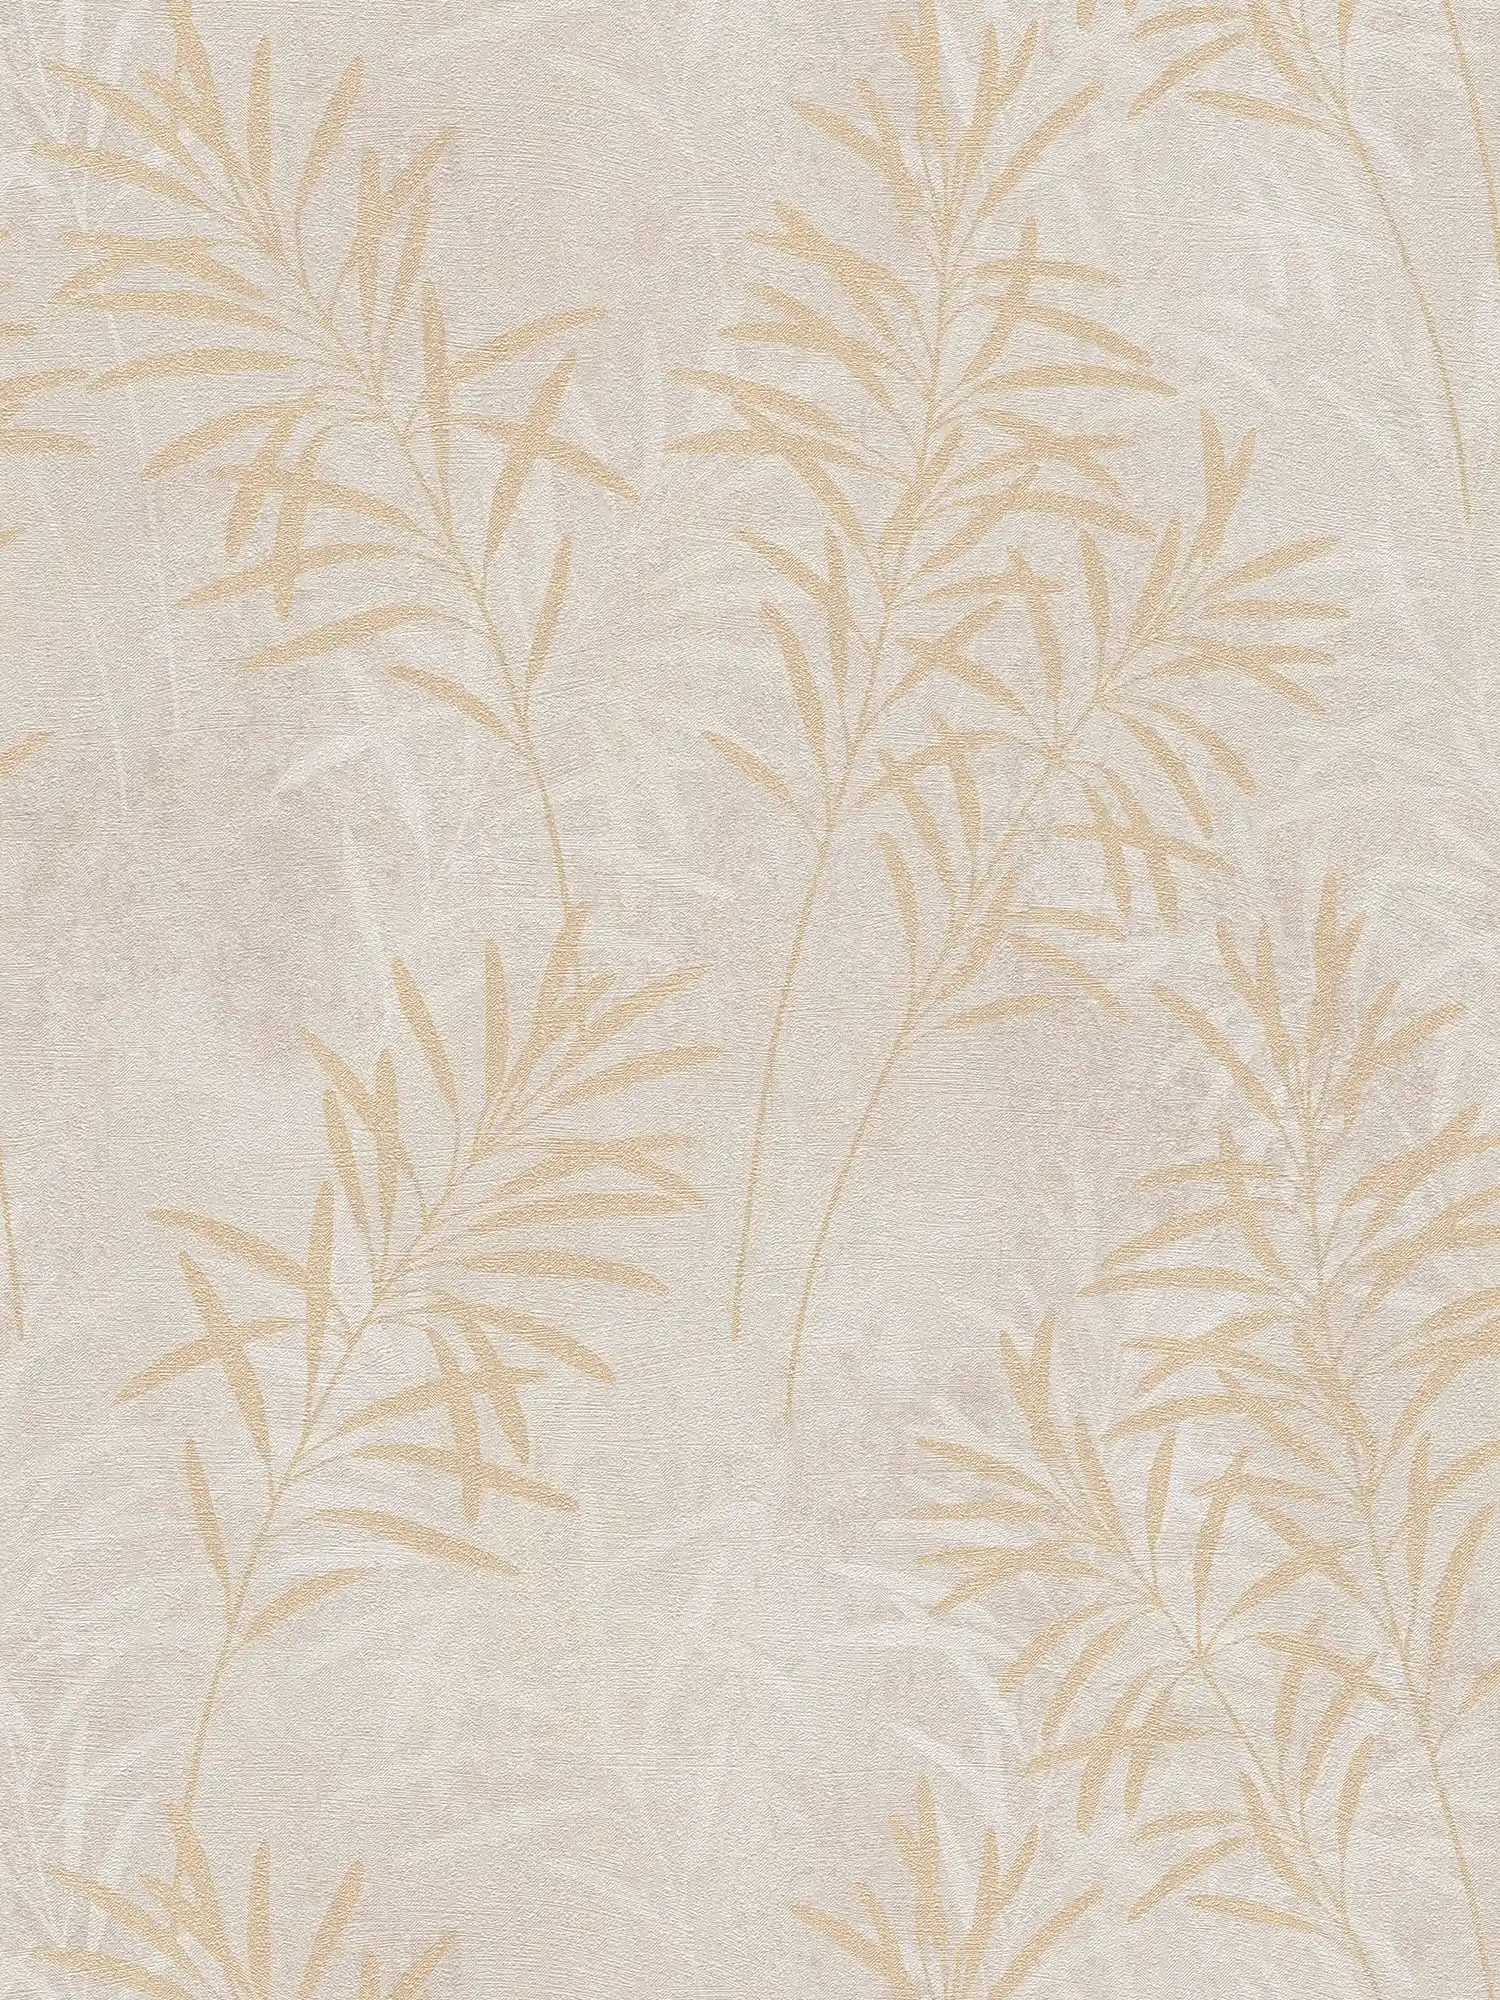 Vliestapete mit floralem Palmen-Muster – Creme, Grau, Gold
